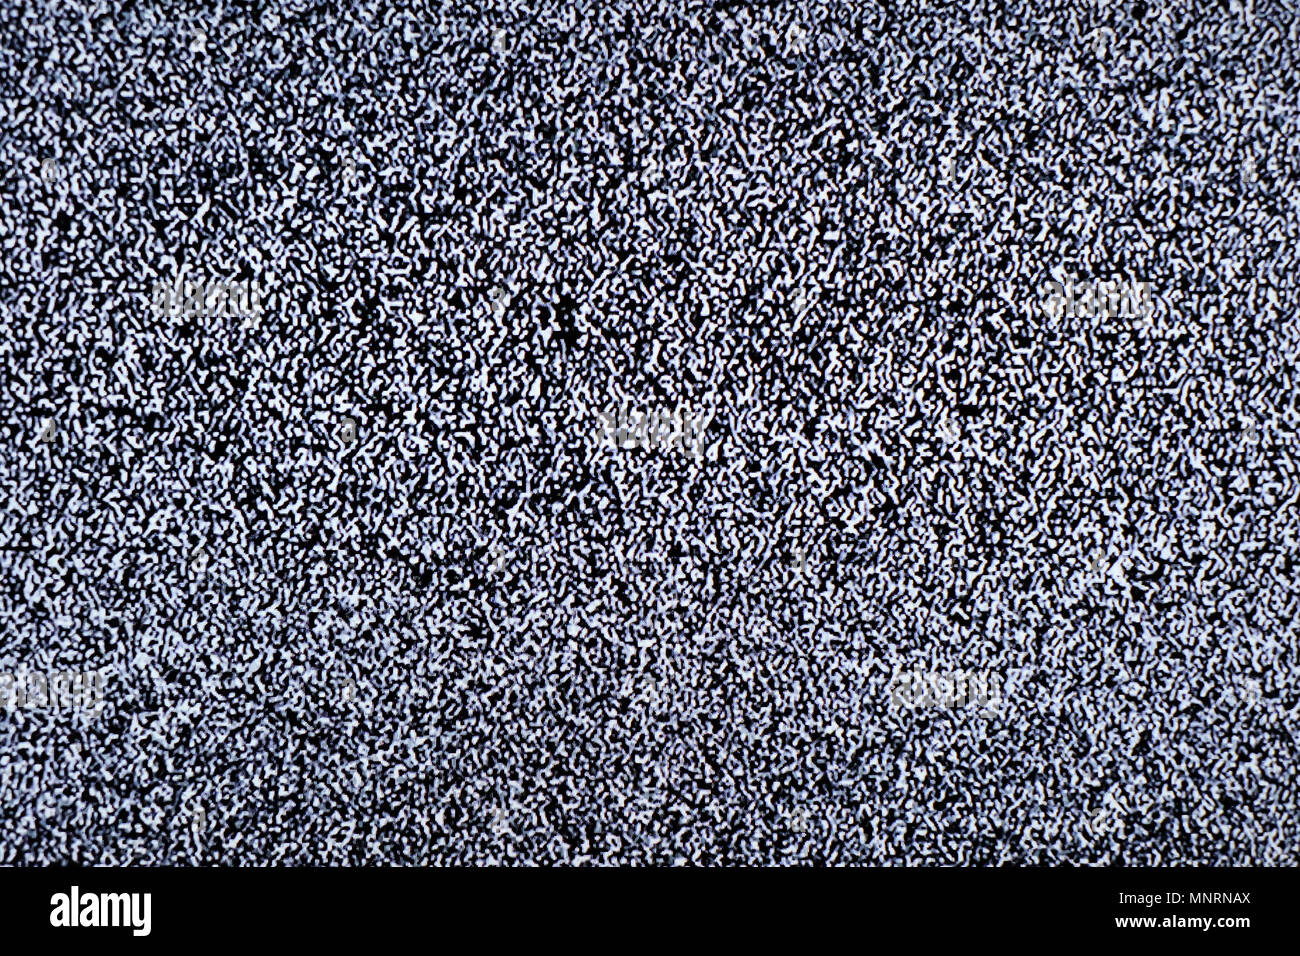 Tv-Bildschirm mit statisches Rauschen durch schlechten Empfang oder kein Signal verursacht. Zusammenfassung Hintergrund. Stockfoto